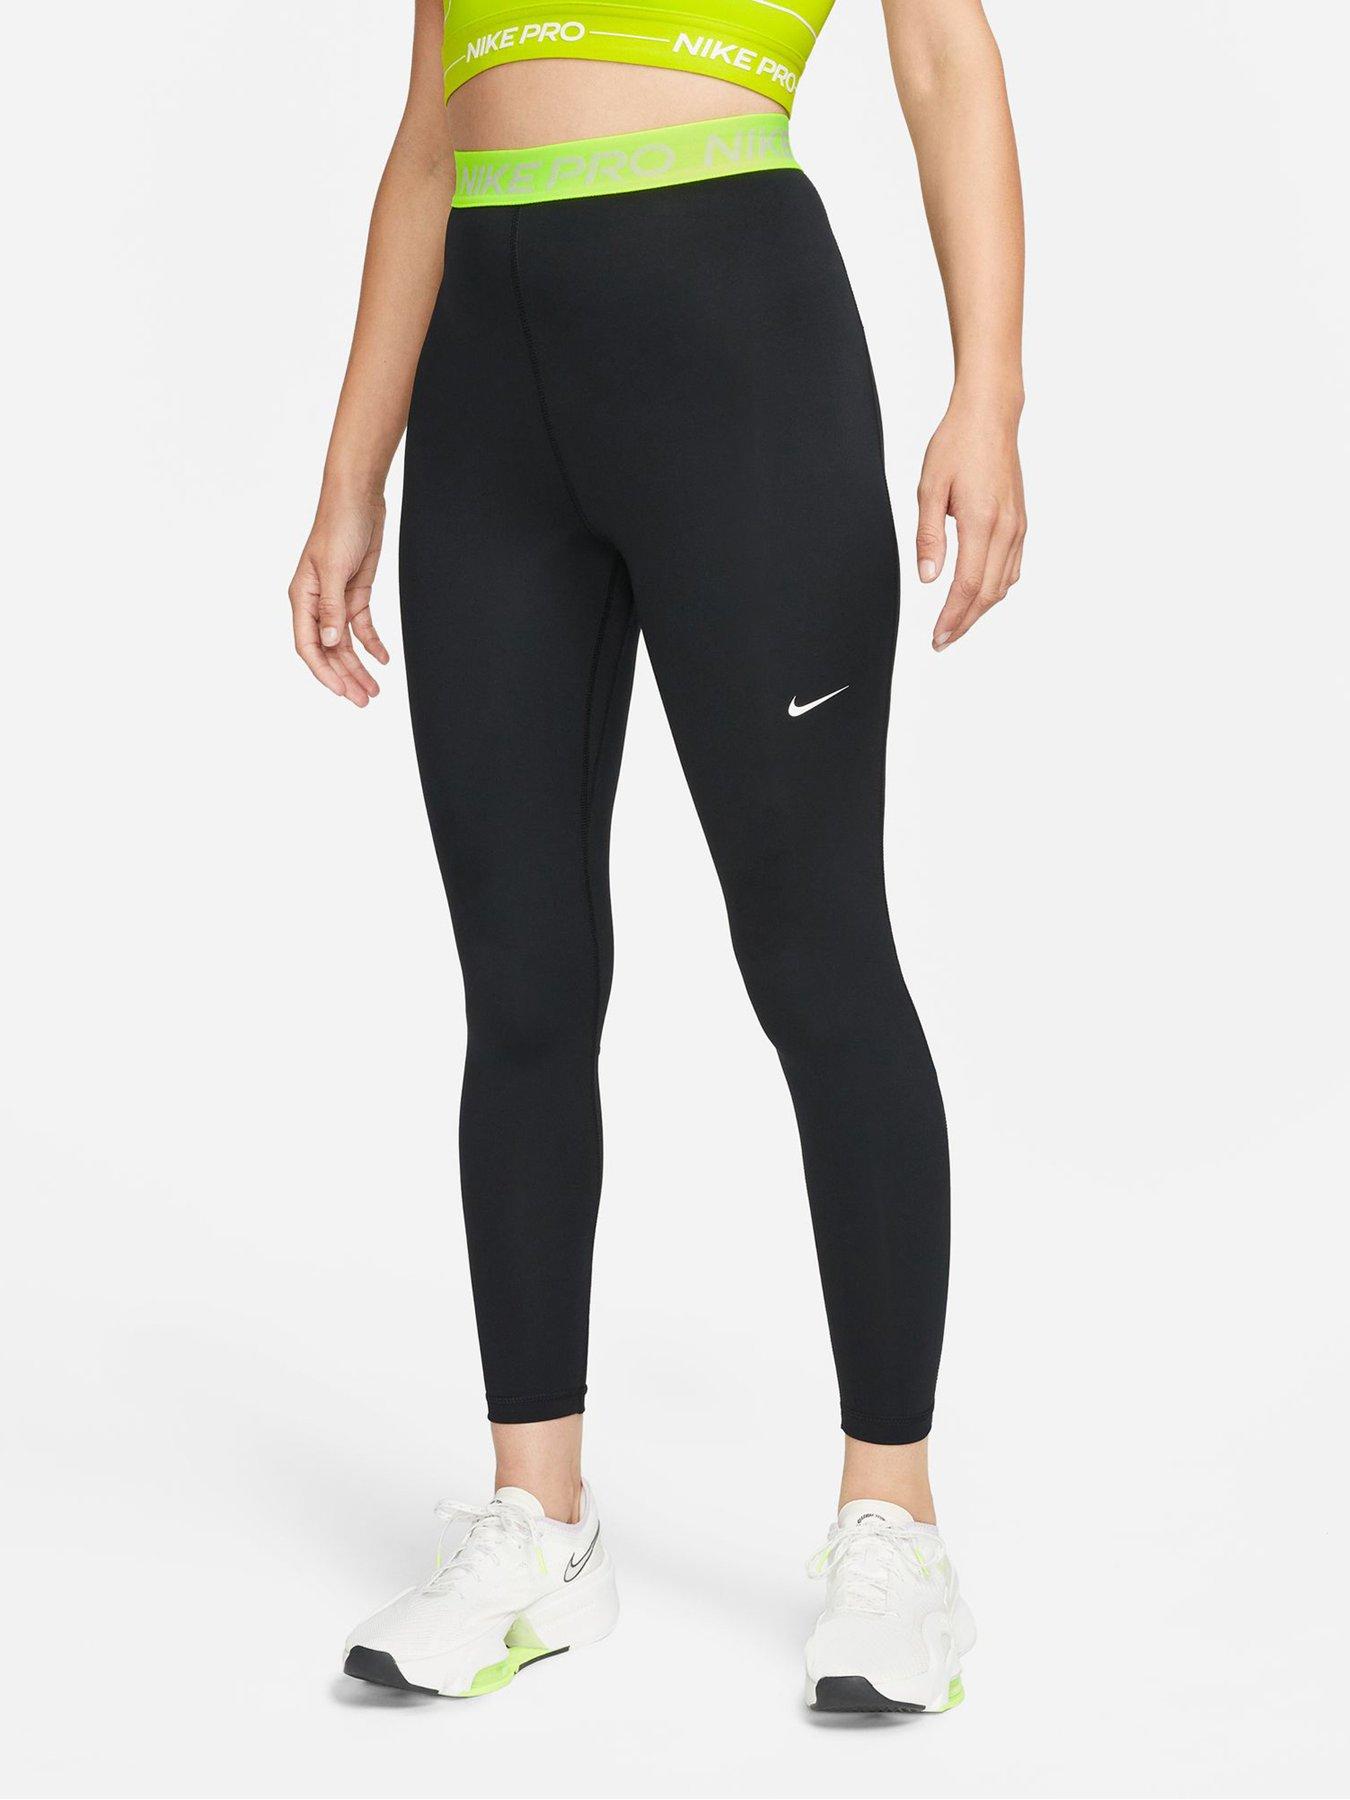 Nike Pro 365 Women's High-Waisted 7/8 Mesh Panel Leggings - Black/Multi